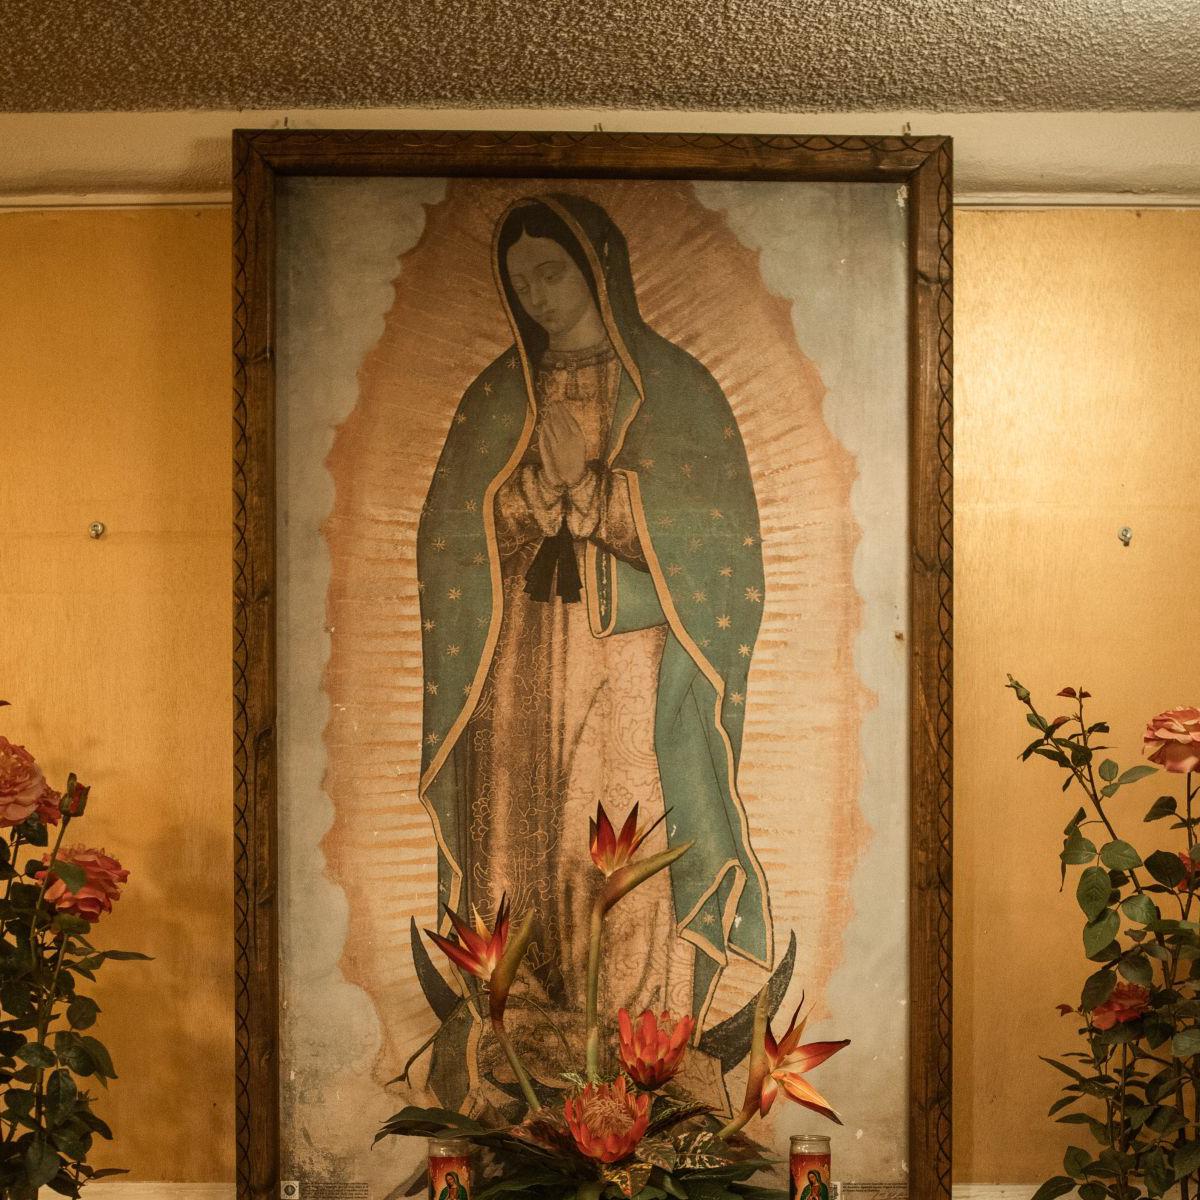 Frases, Día de la Virgen de Guadalupe: cantos, oraciones imágenes